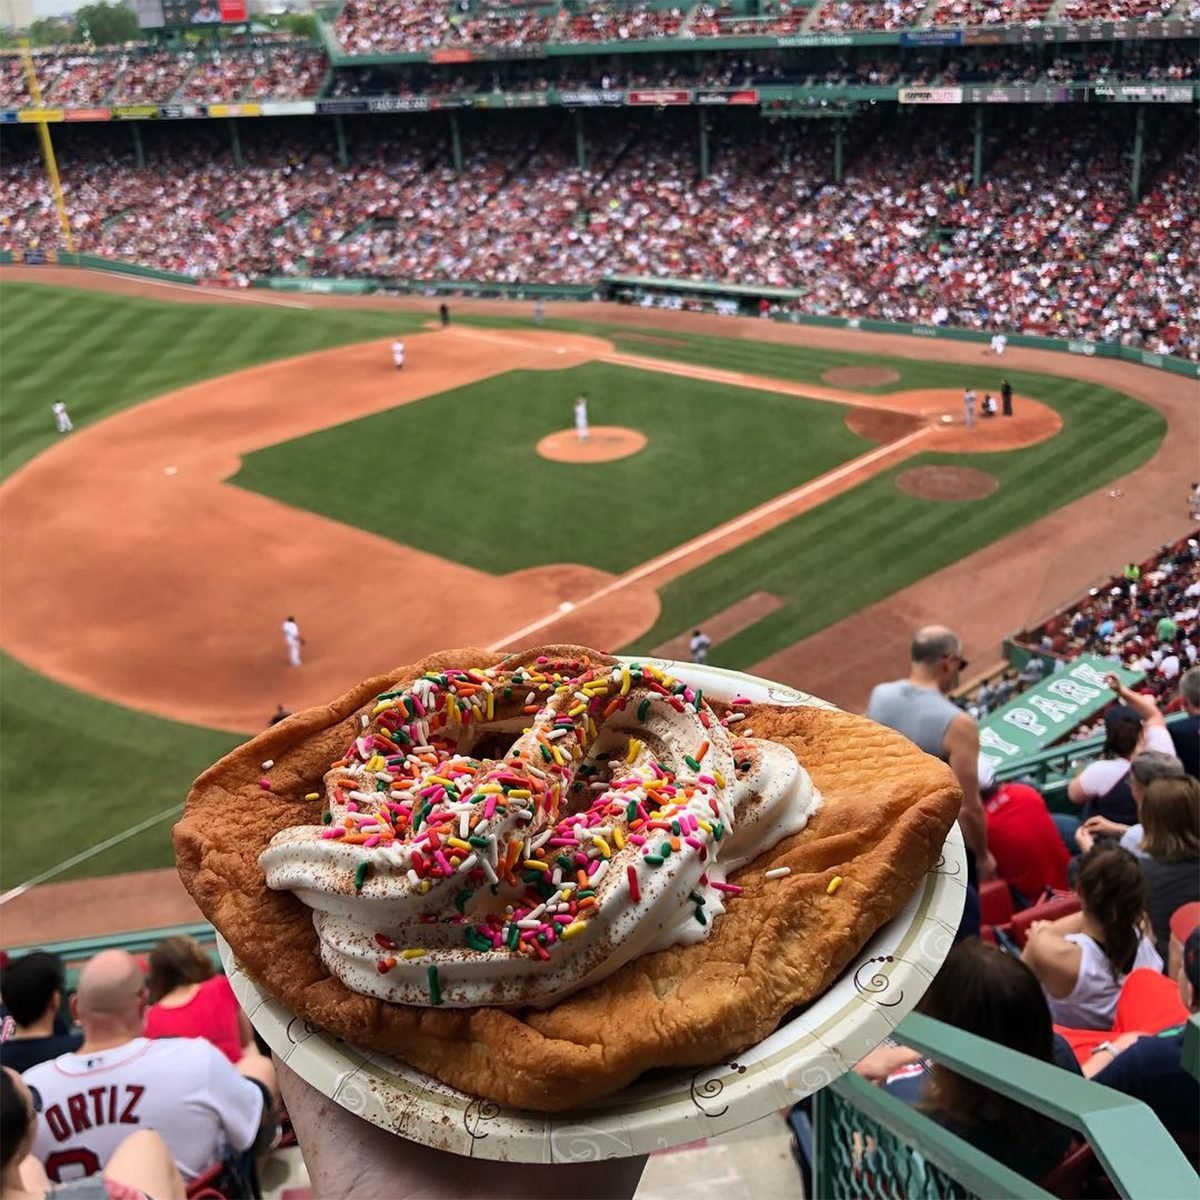 Best Baseball Stadium Food 2018 - Famous MLB Foods